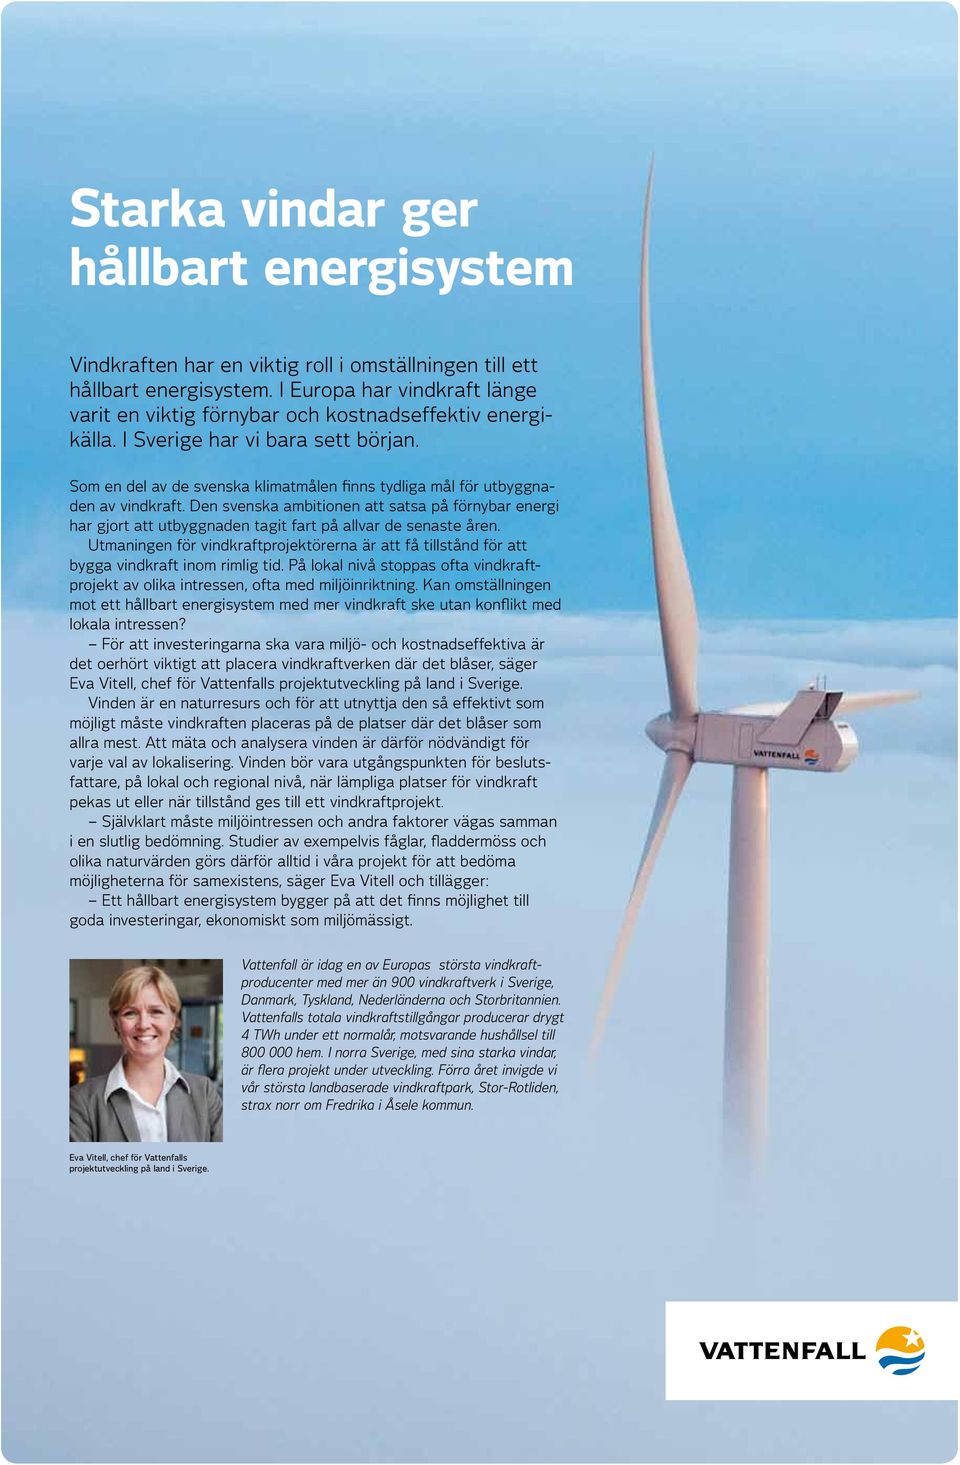 Som en del av de svenska klimatmålen finns tydliga mål för utbyggnaden av vindkraft. Den svenska ambitionen att satsa på förnybar energi har gjort att utbyggnaden tagit fart på allvar de senaste åren.